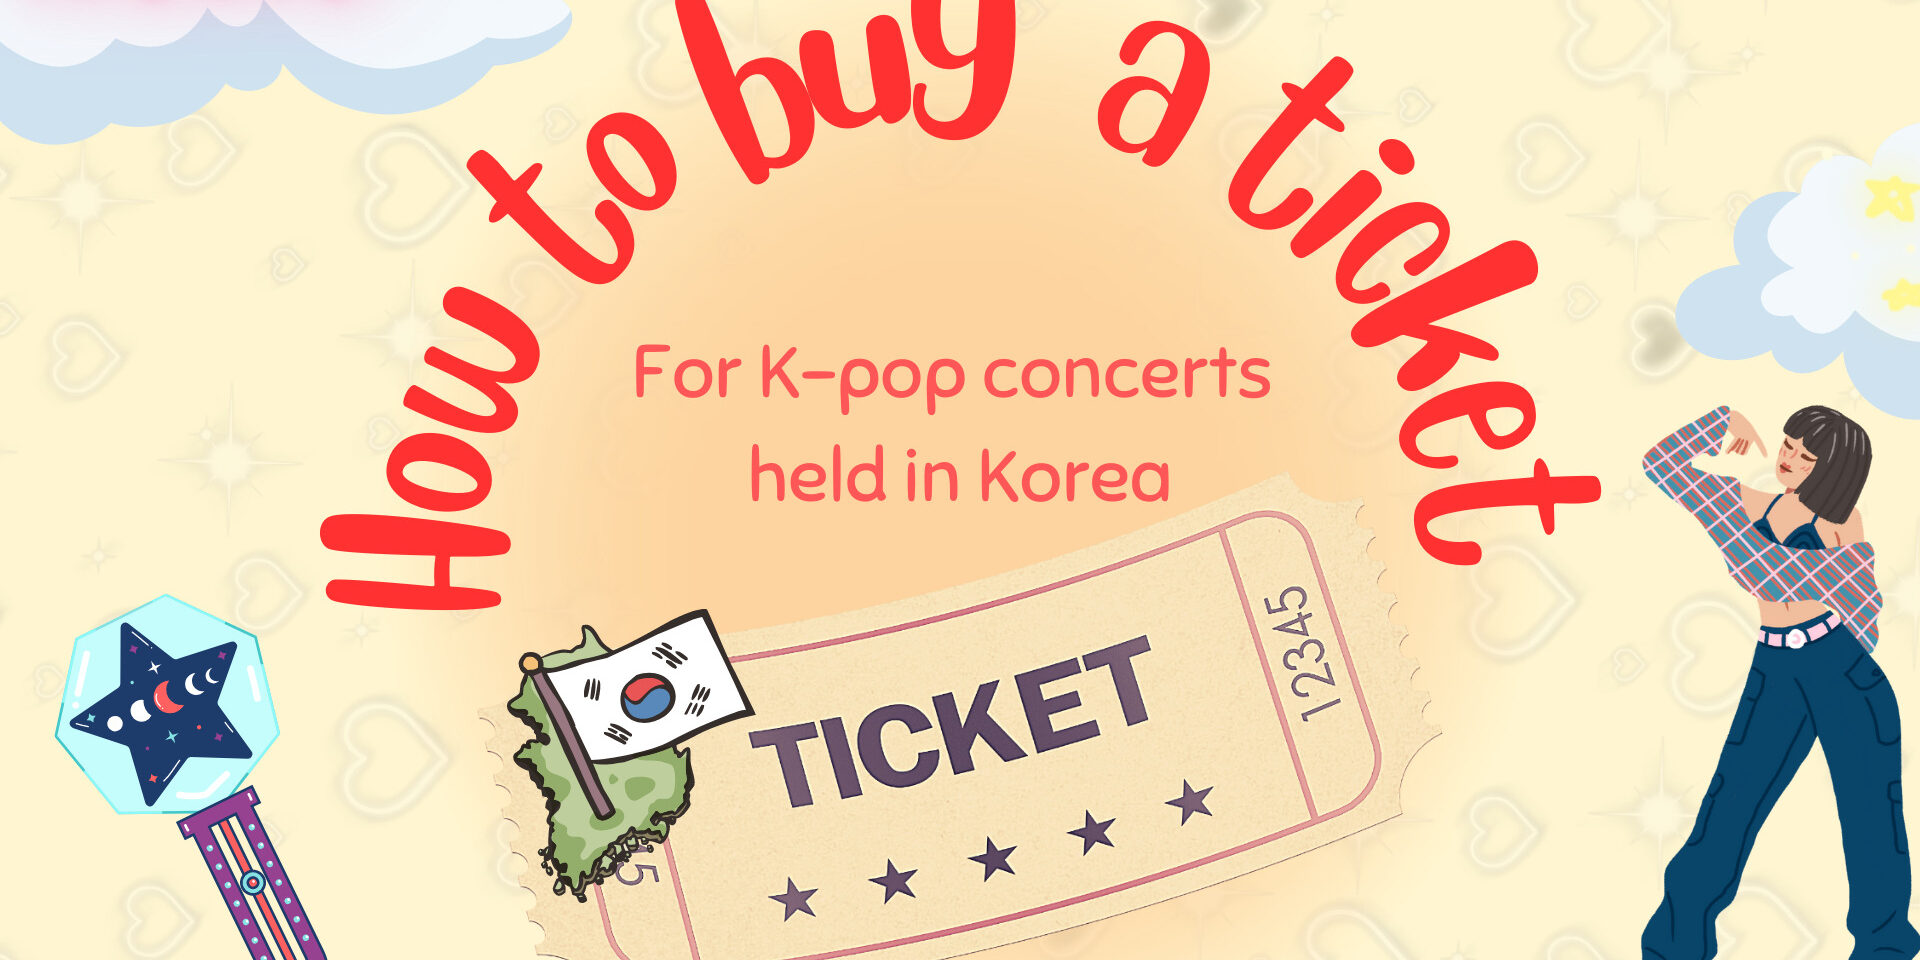 Как купить билет на концерты K-pop в Корее？ - Etourism